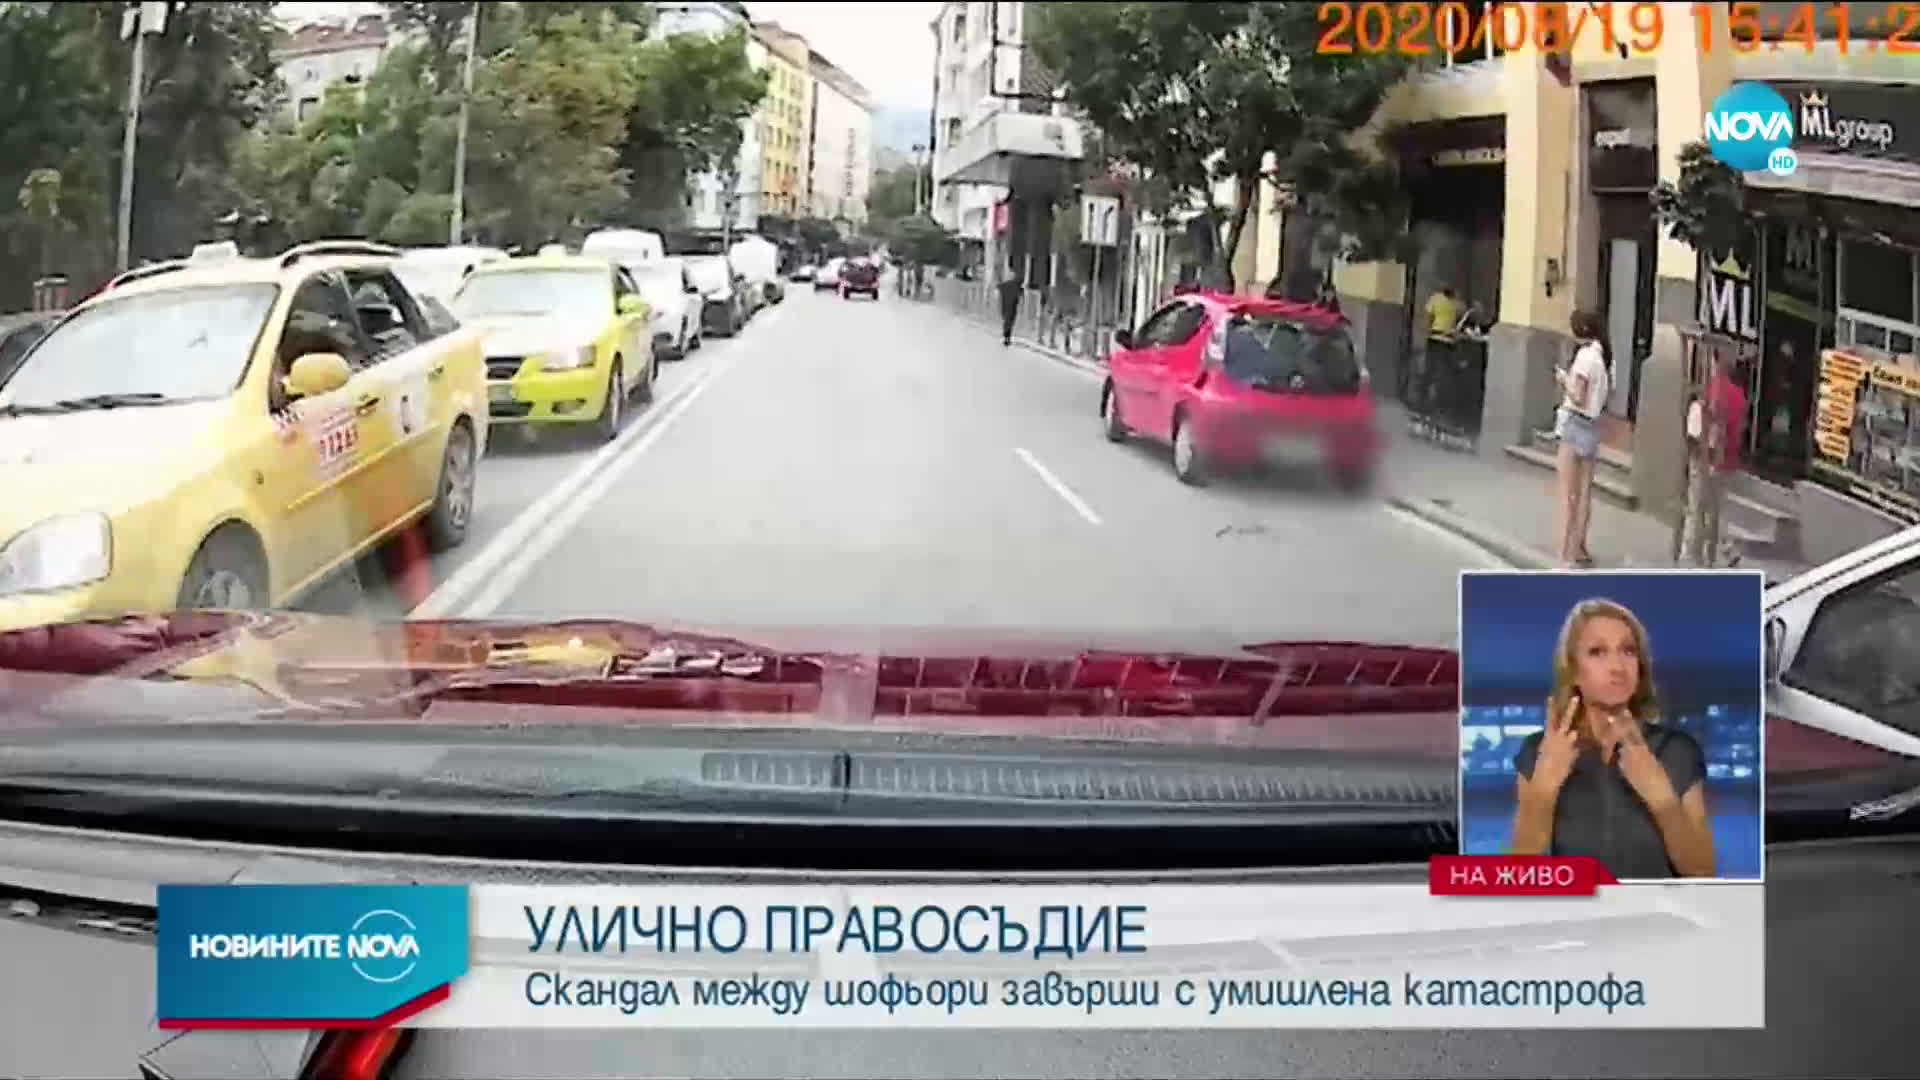 ОТ "МОЯТА НОВИНА": Шофьор с G класа блокира булевард, блъсна кола и си замина